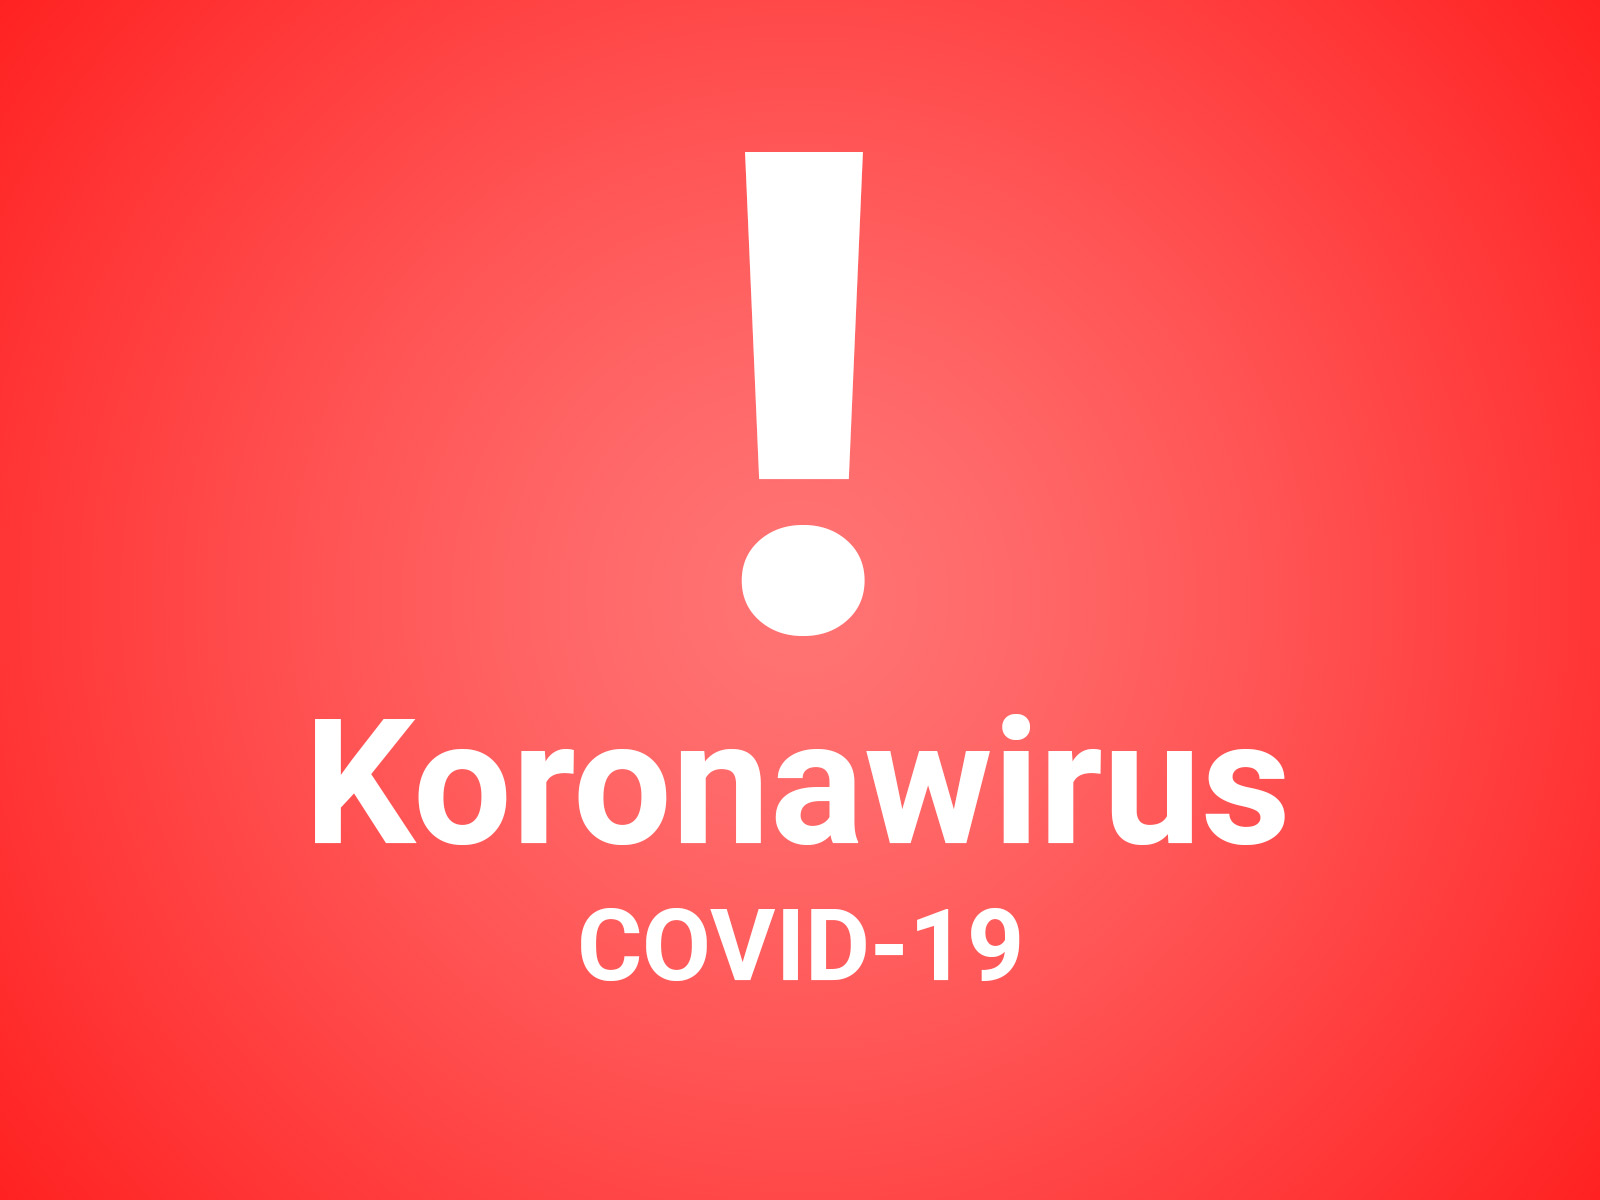 You are currently viewing Zarządzenie Biskupa Koszalińsko-Kołobrzeskiego dotyczące zasad bezpieczeństwa i higieny oraz duszpasterstwa w czasie epidemii koronawirusa SARS-CoV-2